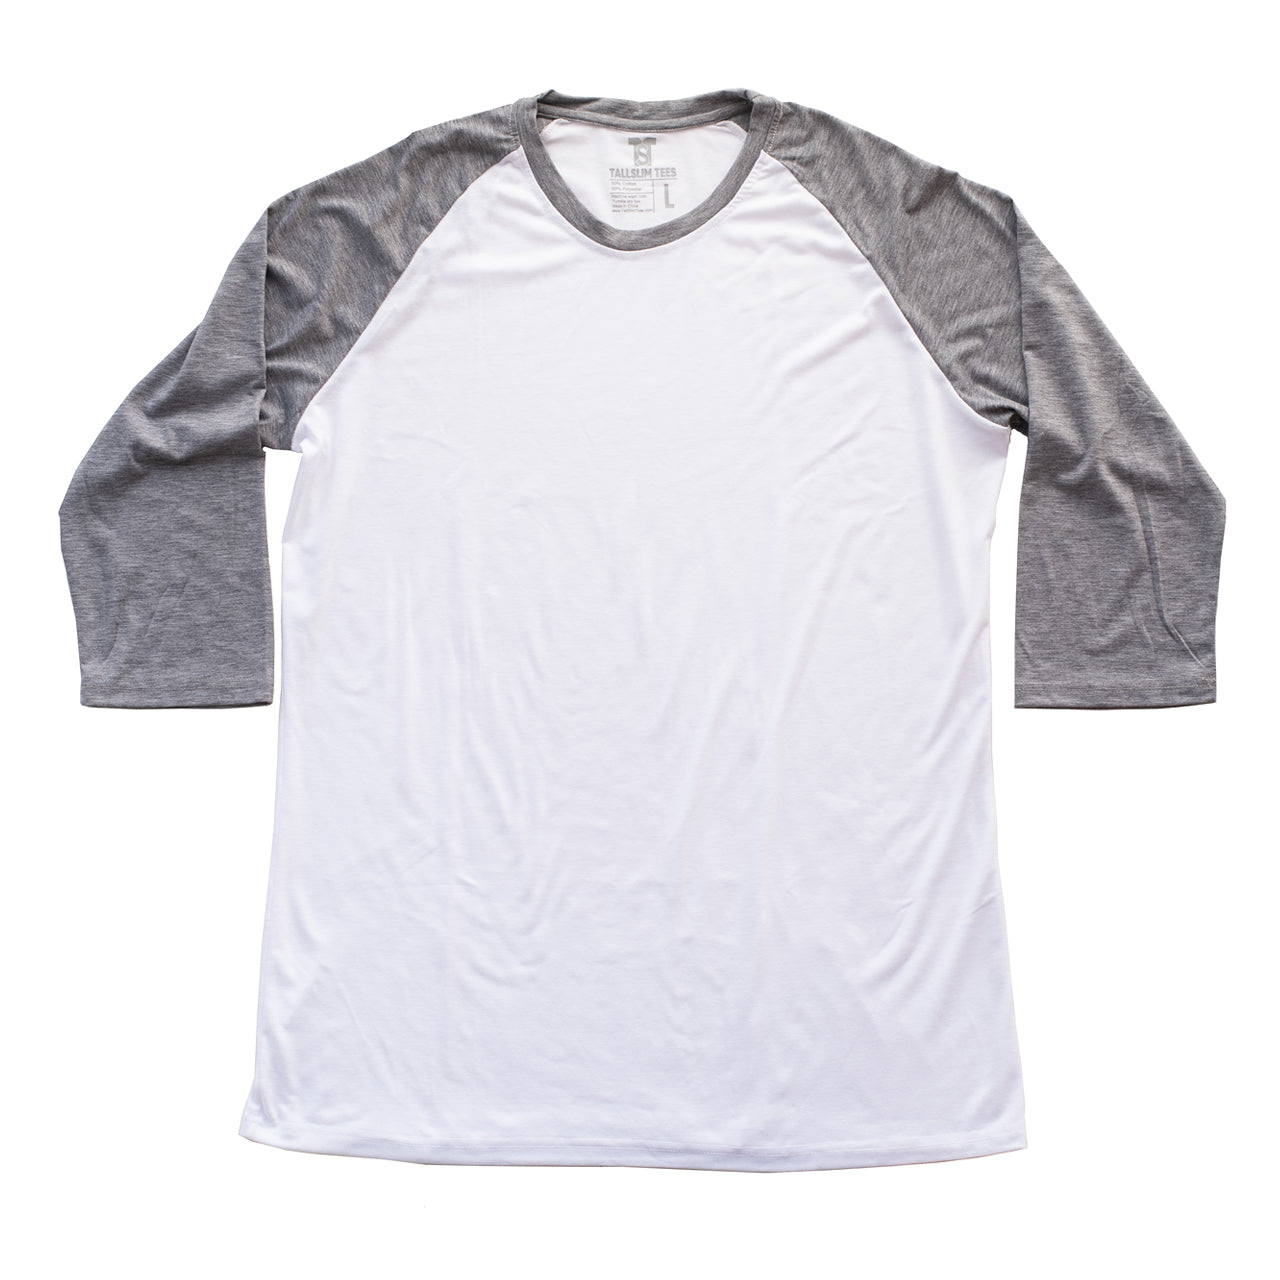 White and Light Gray Raglan 3/4 Sleeve Shirt For Tall Slim Men